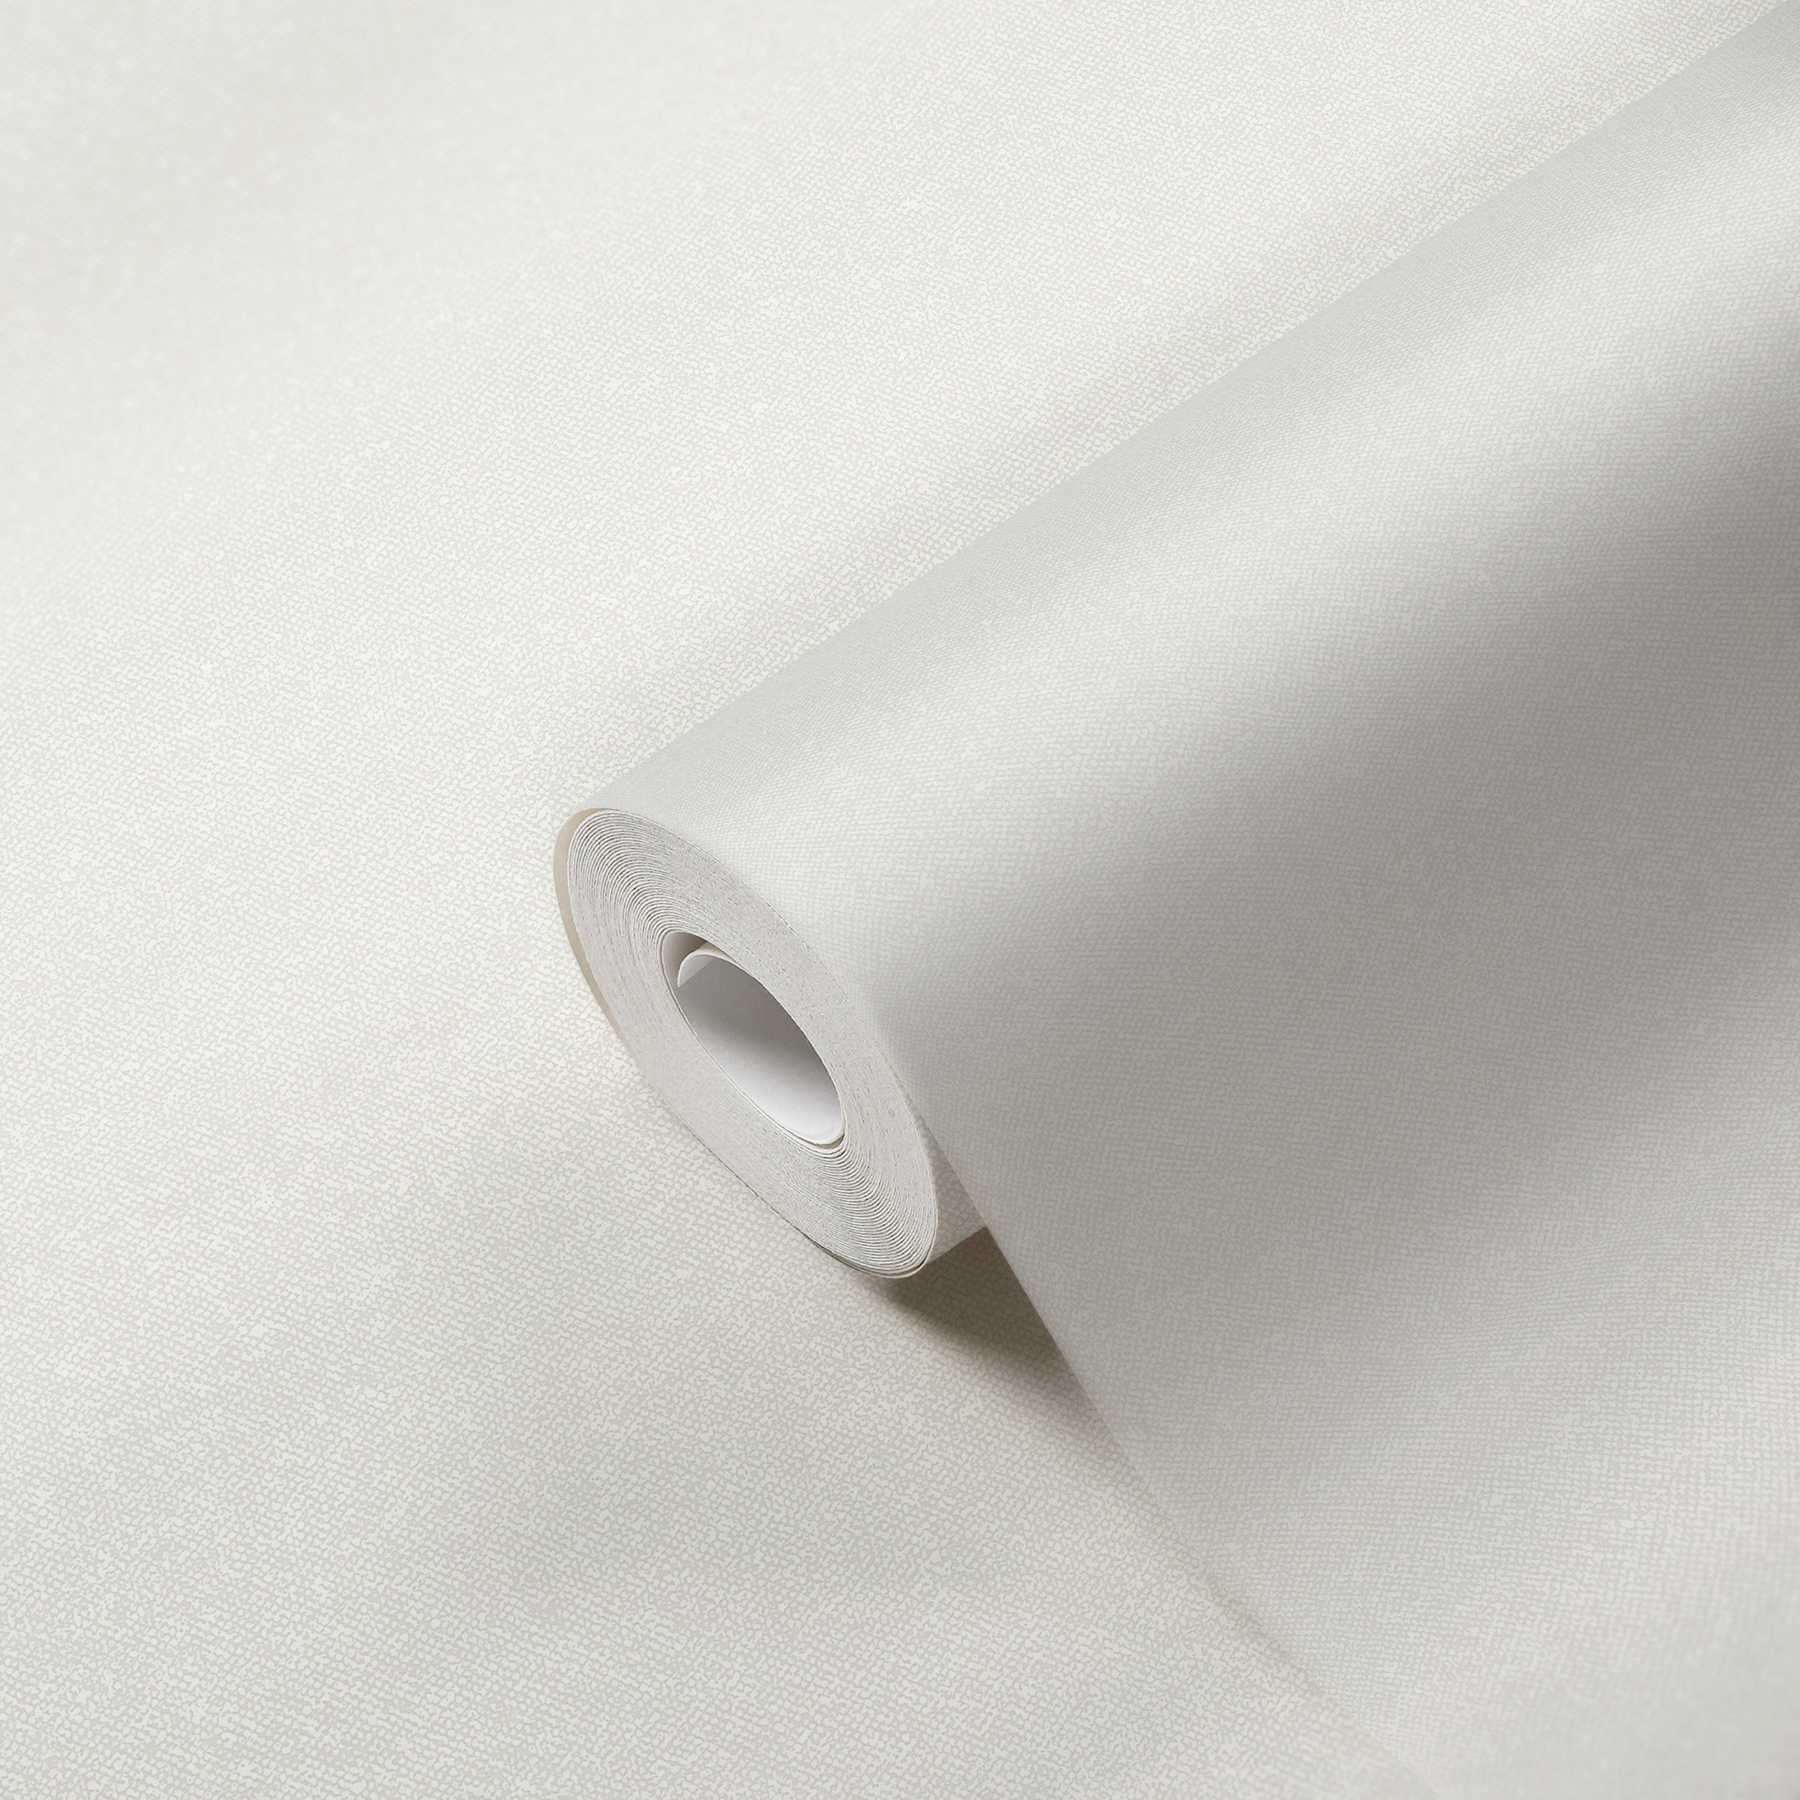             Carta da parati a tinta unita effetto tessuto - bianco, crema
        